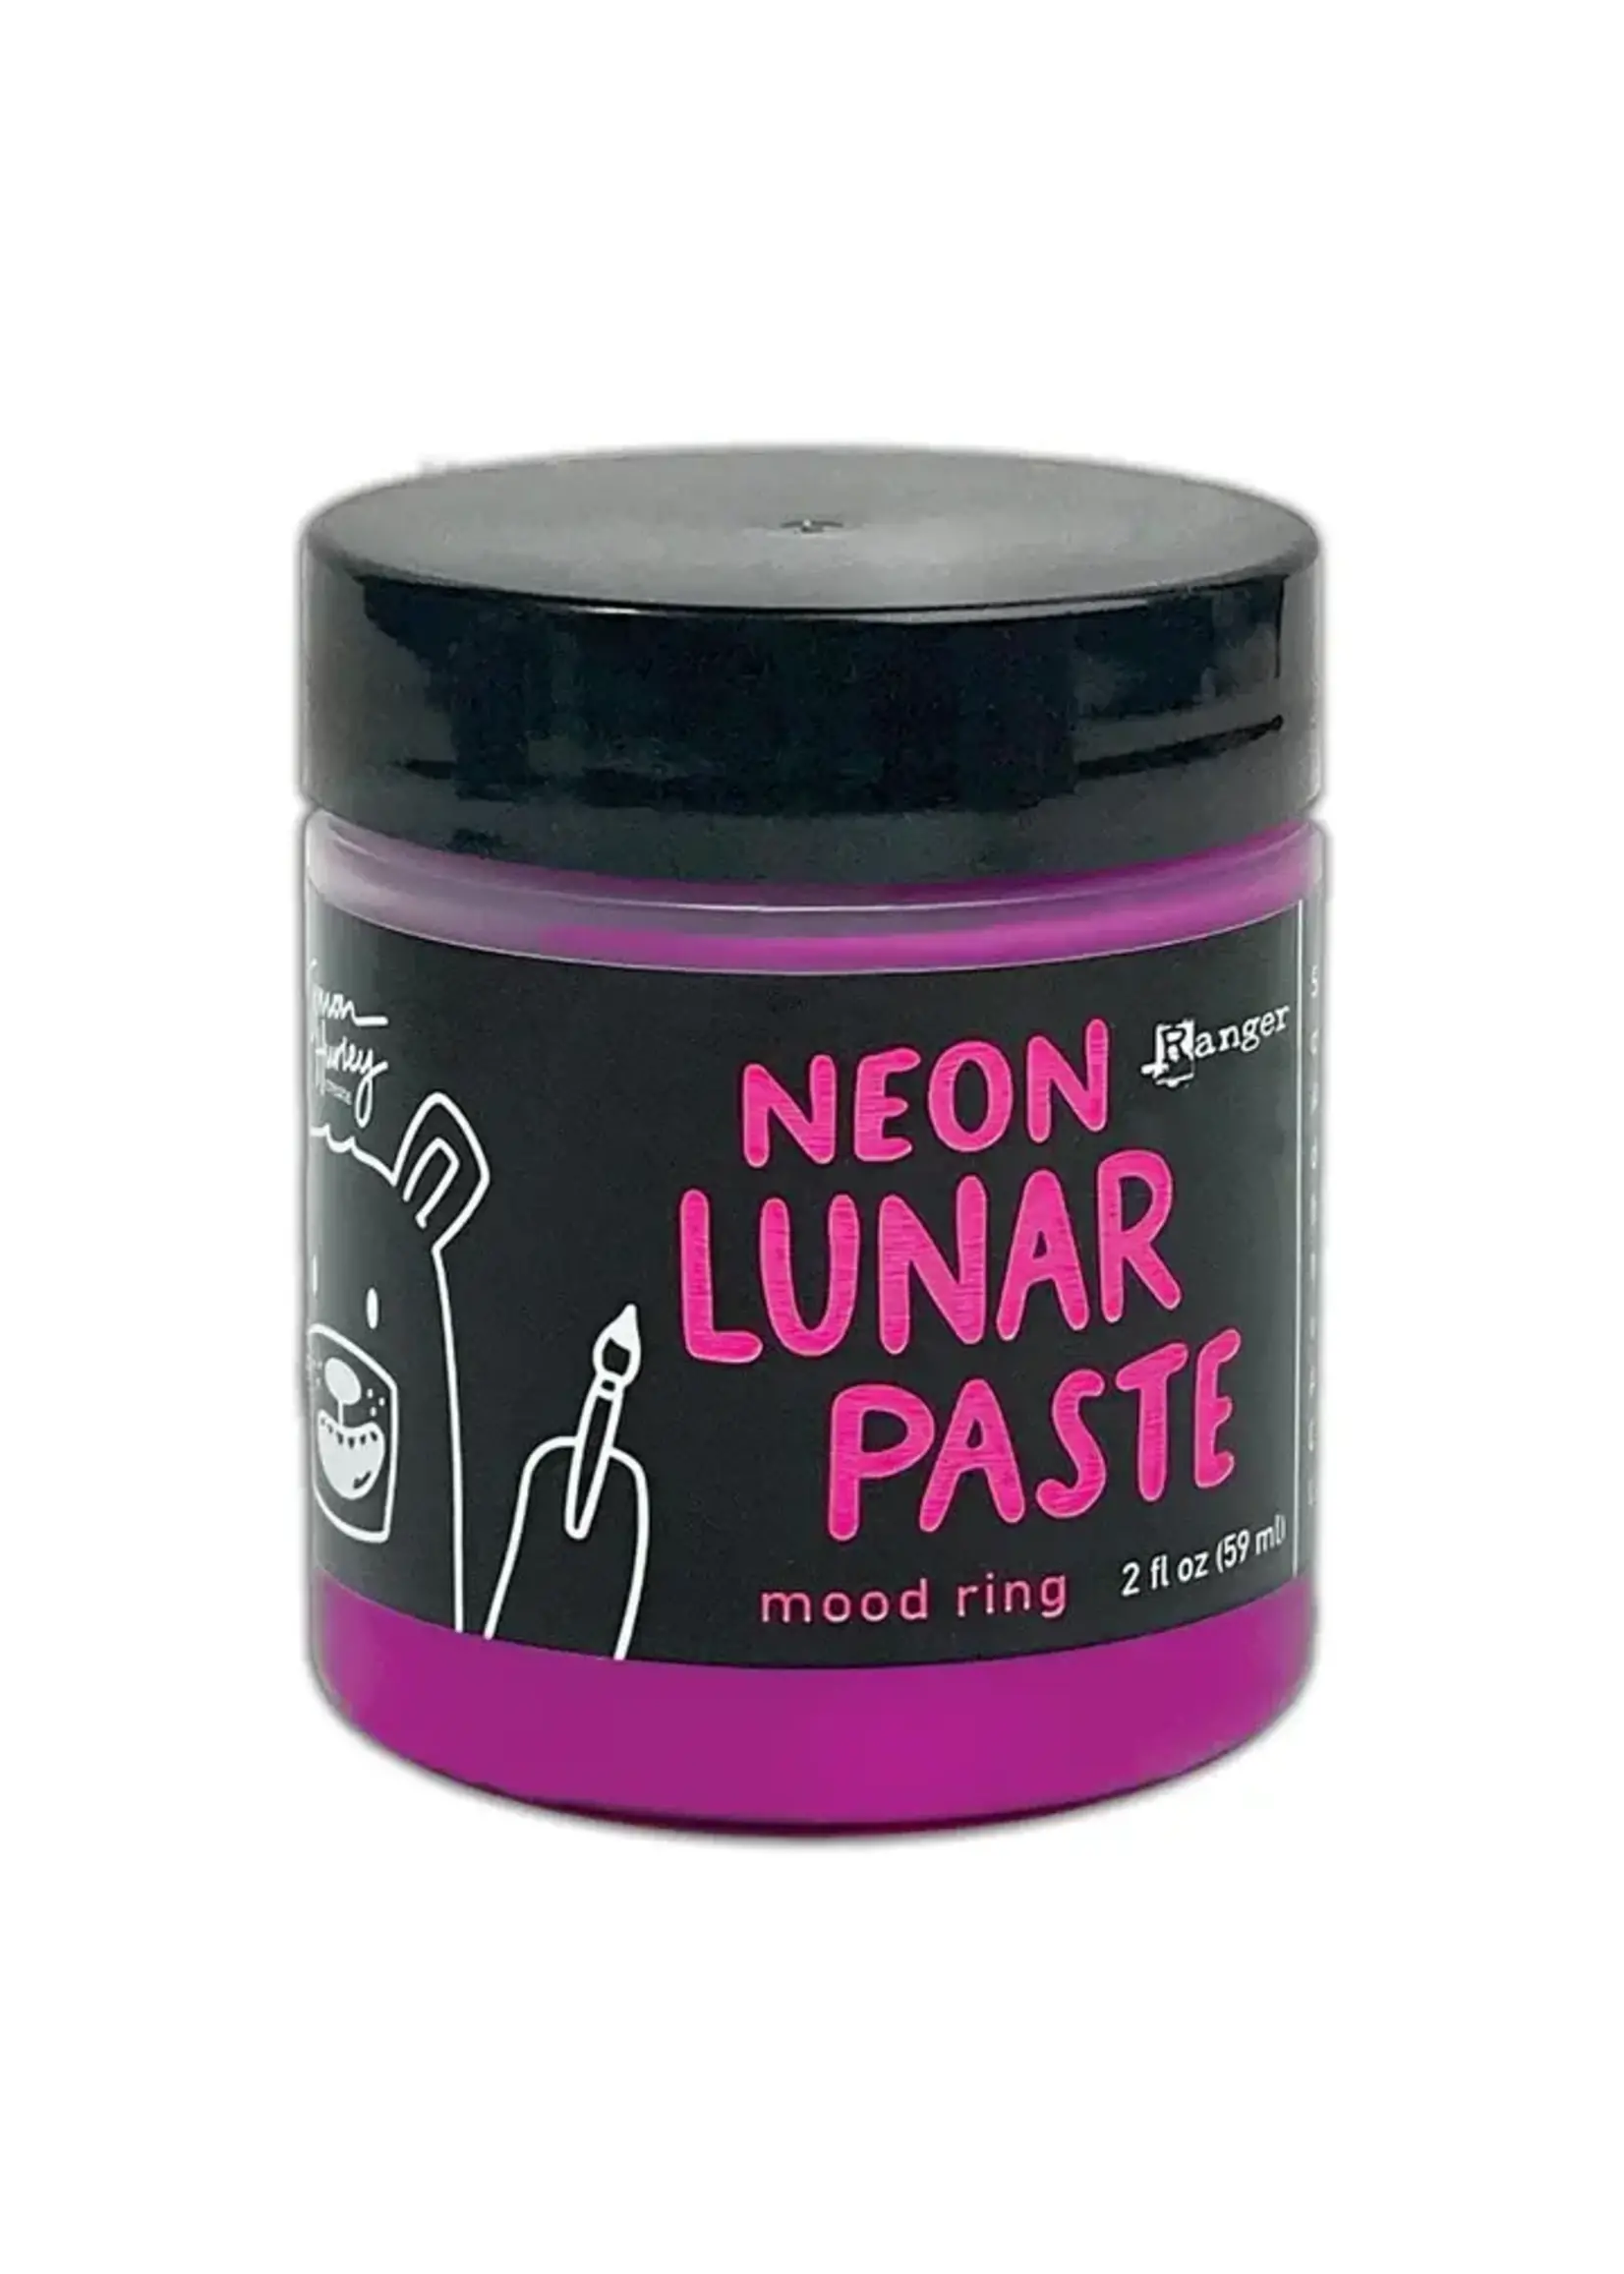 RANGER Simon Hurley Neon Lunar Paste: Mood Ring